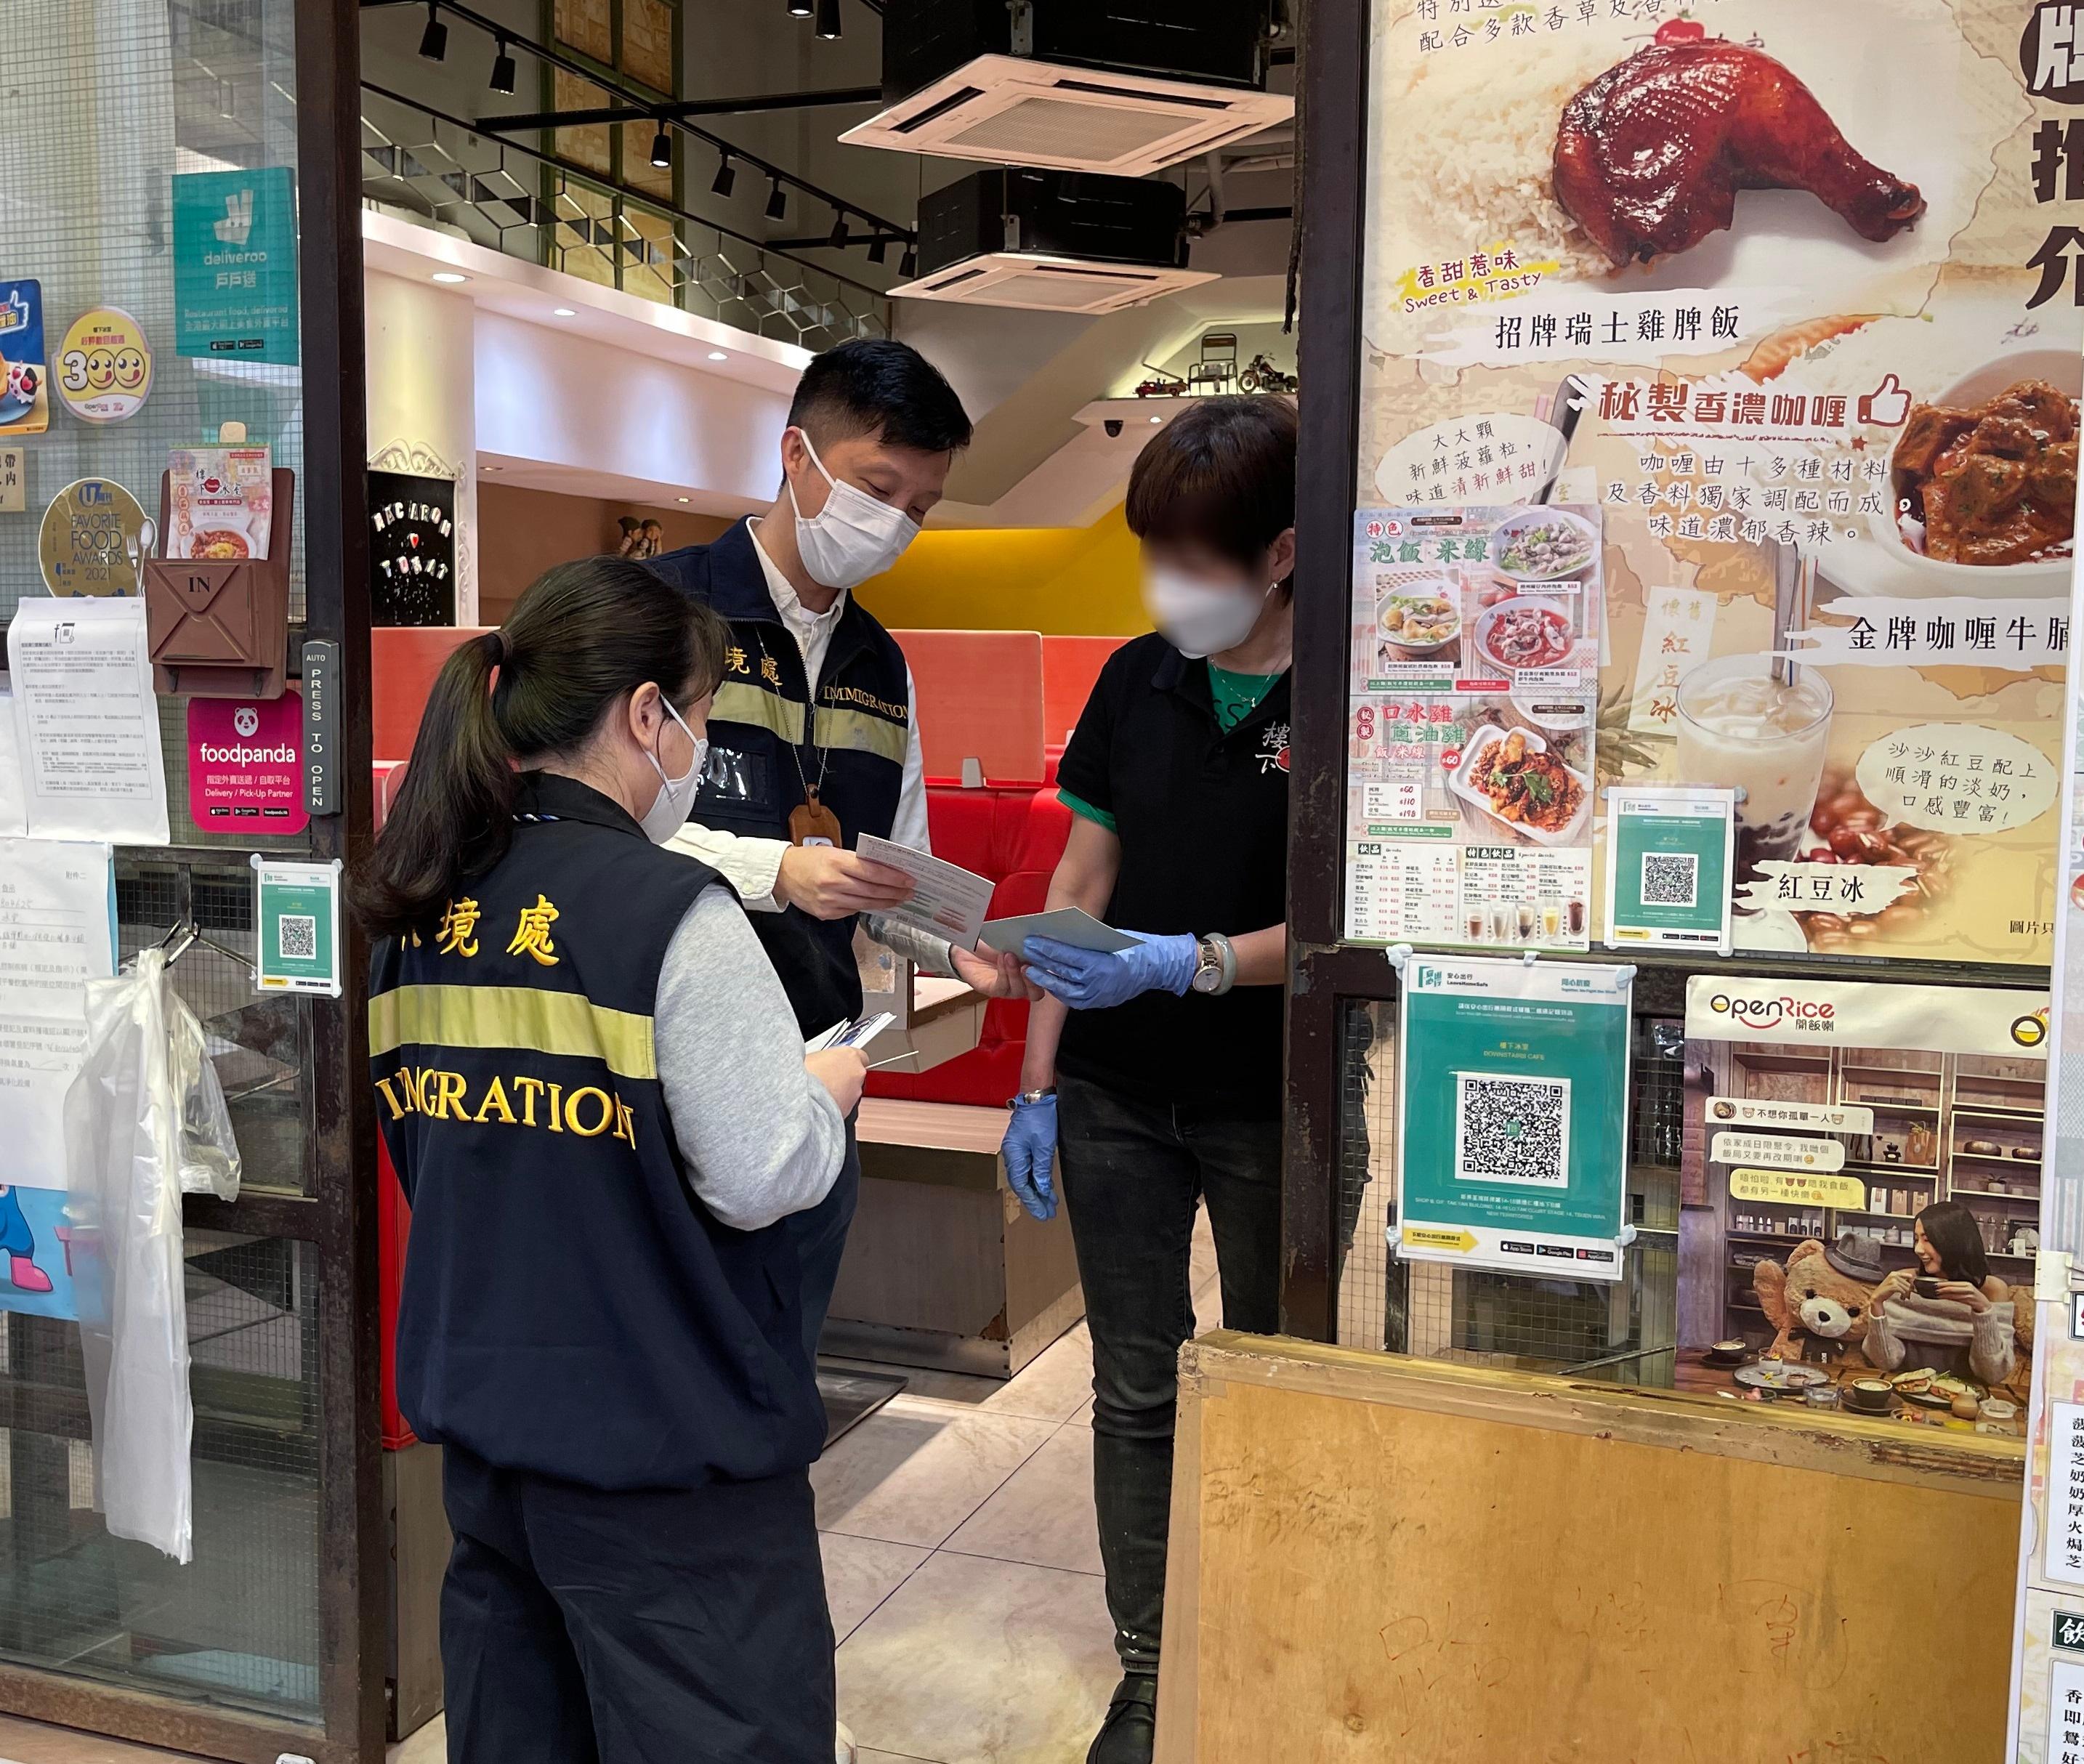 入境處事務處人員向食肆職員派發「切勿聘用非法勞工」的宣傳單張。